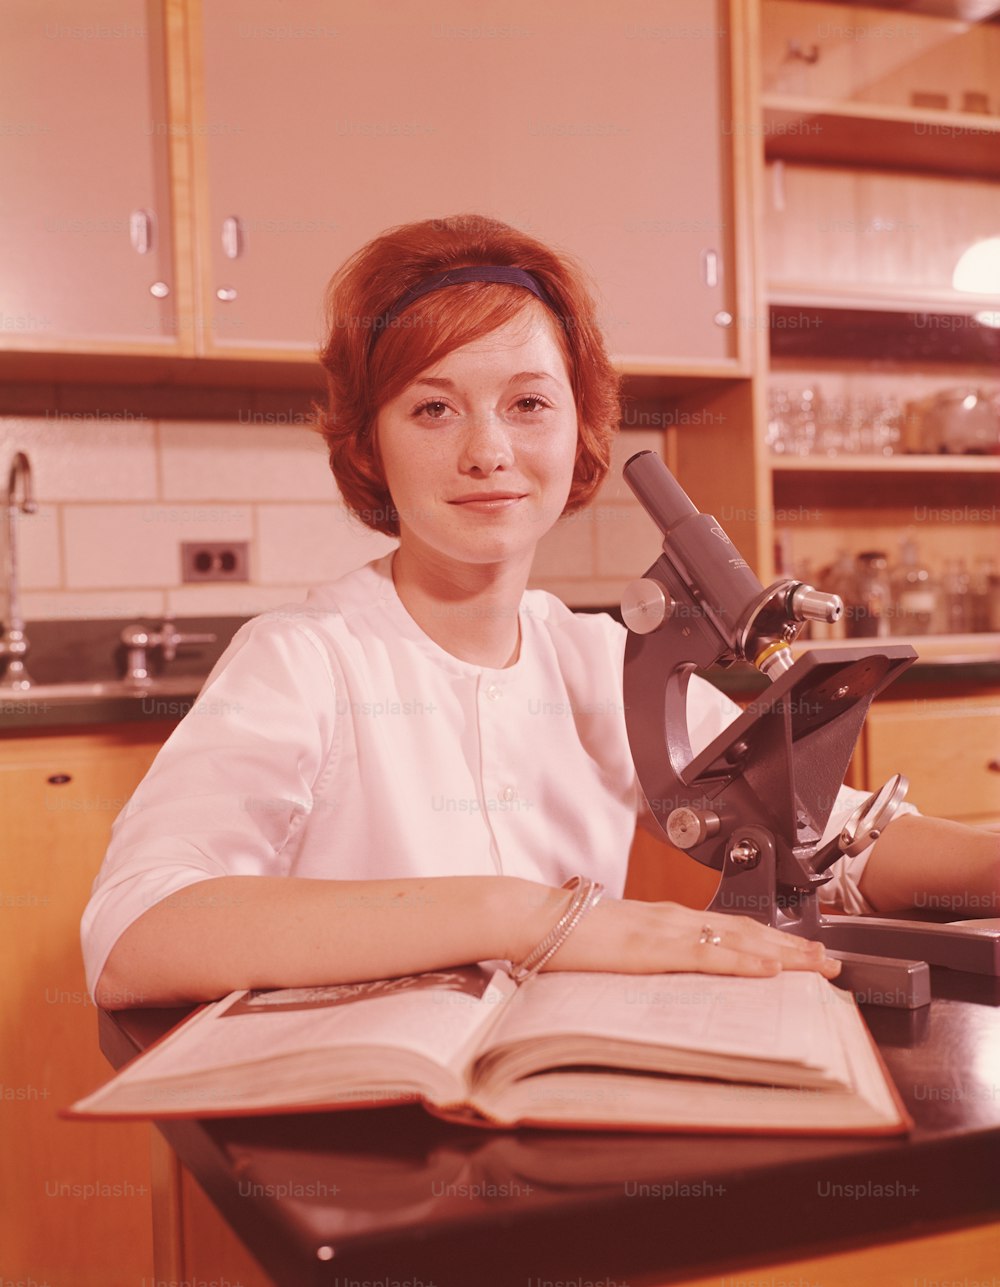 ESTADOS UNIDOS - CIRCA 1960s: Estudiante adolescente sentada junto al microscopio y libro de texto abierto, sonriendo, retrato.